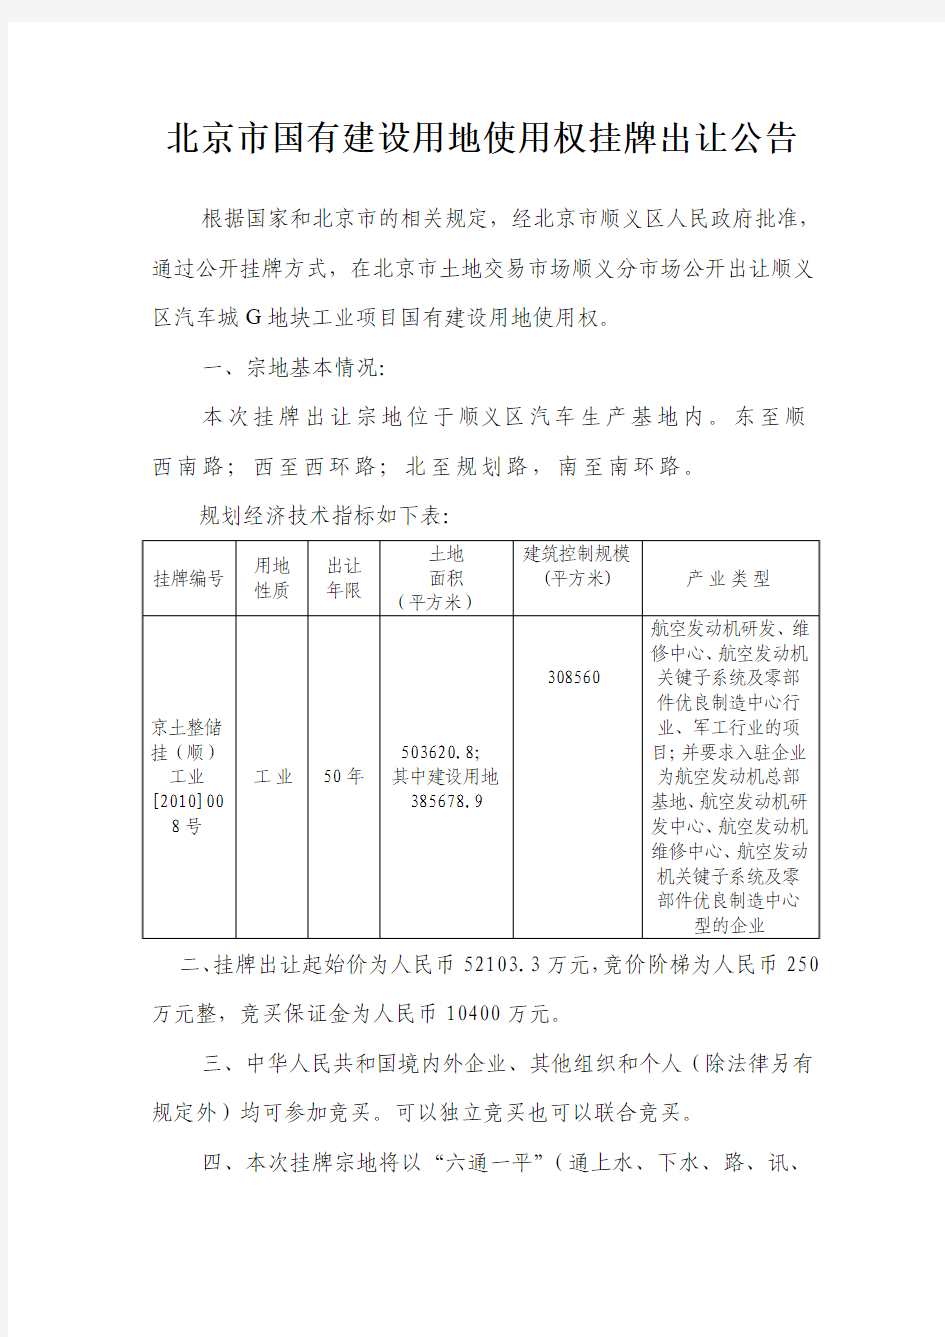 北京市国有建设用地使用权挂牌出让公告